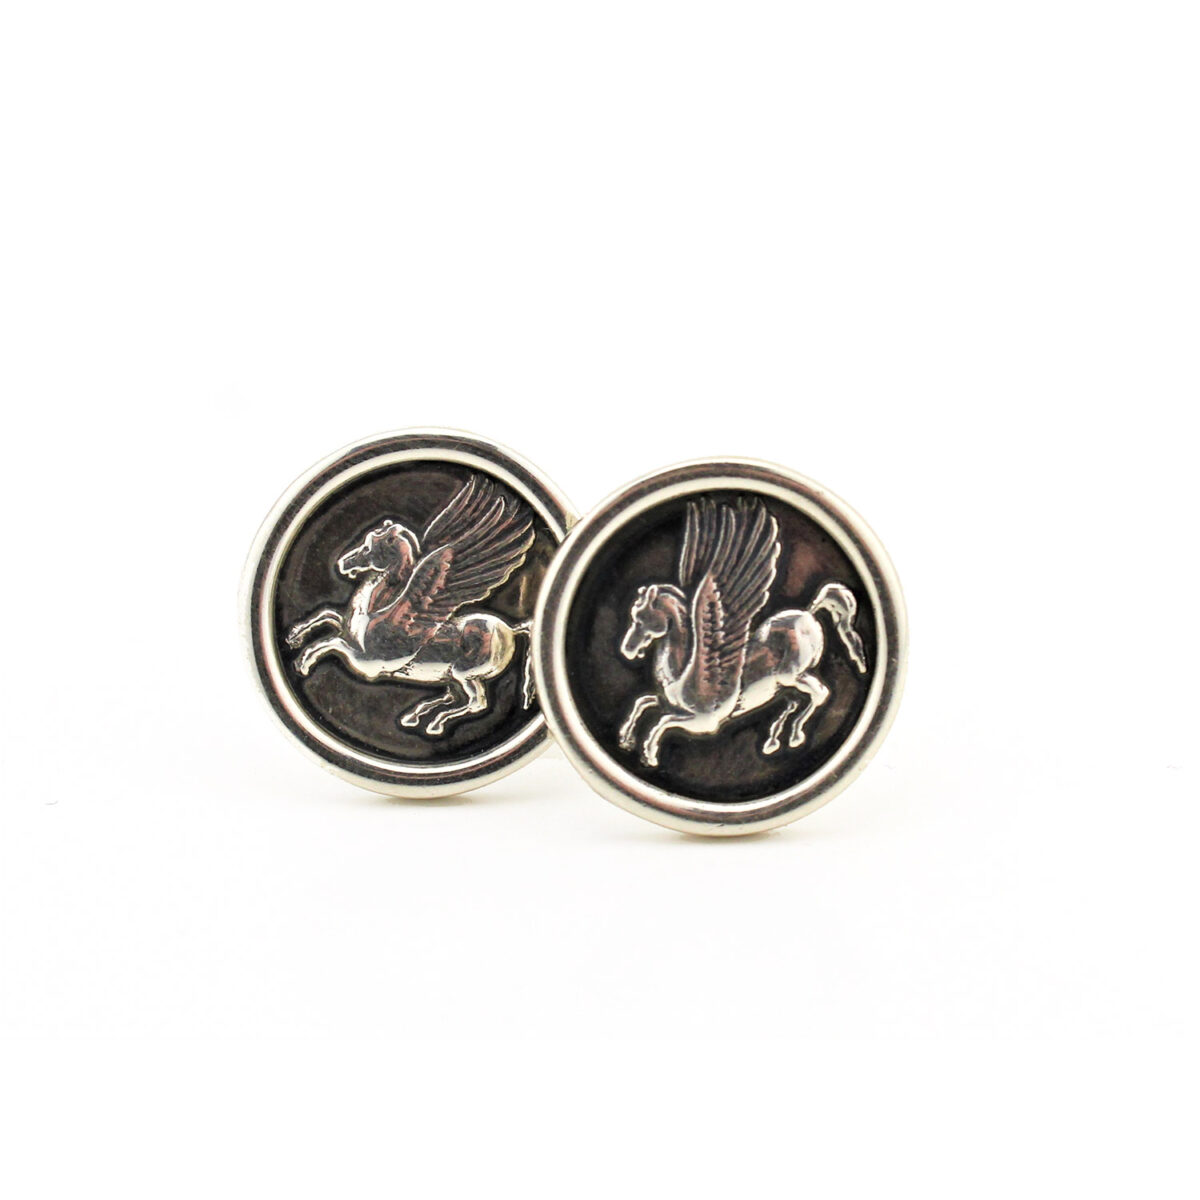 Pegasus Cufflinks – 925 Sterling Silver